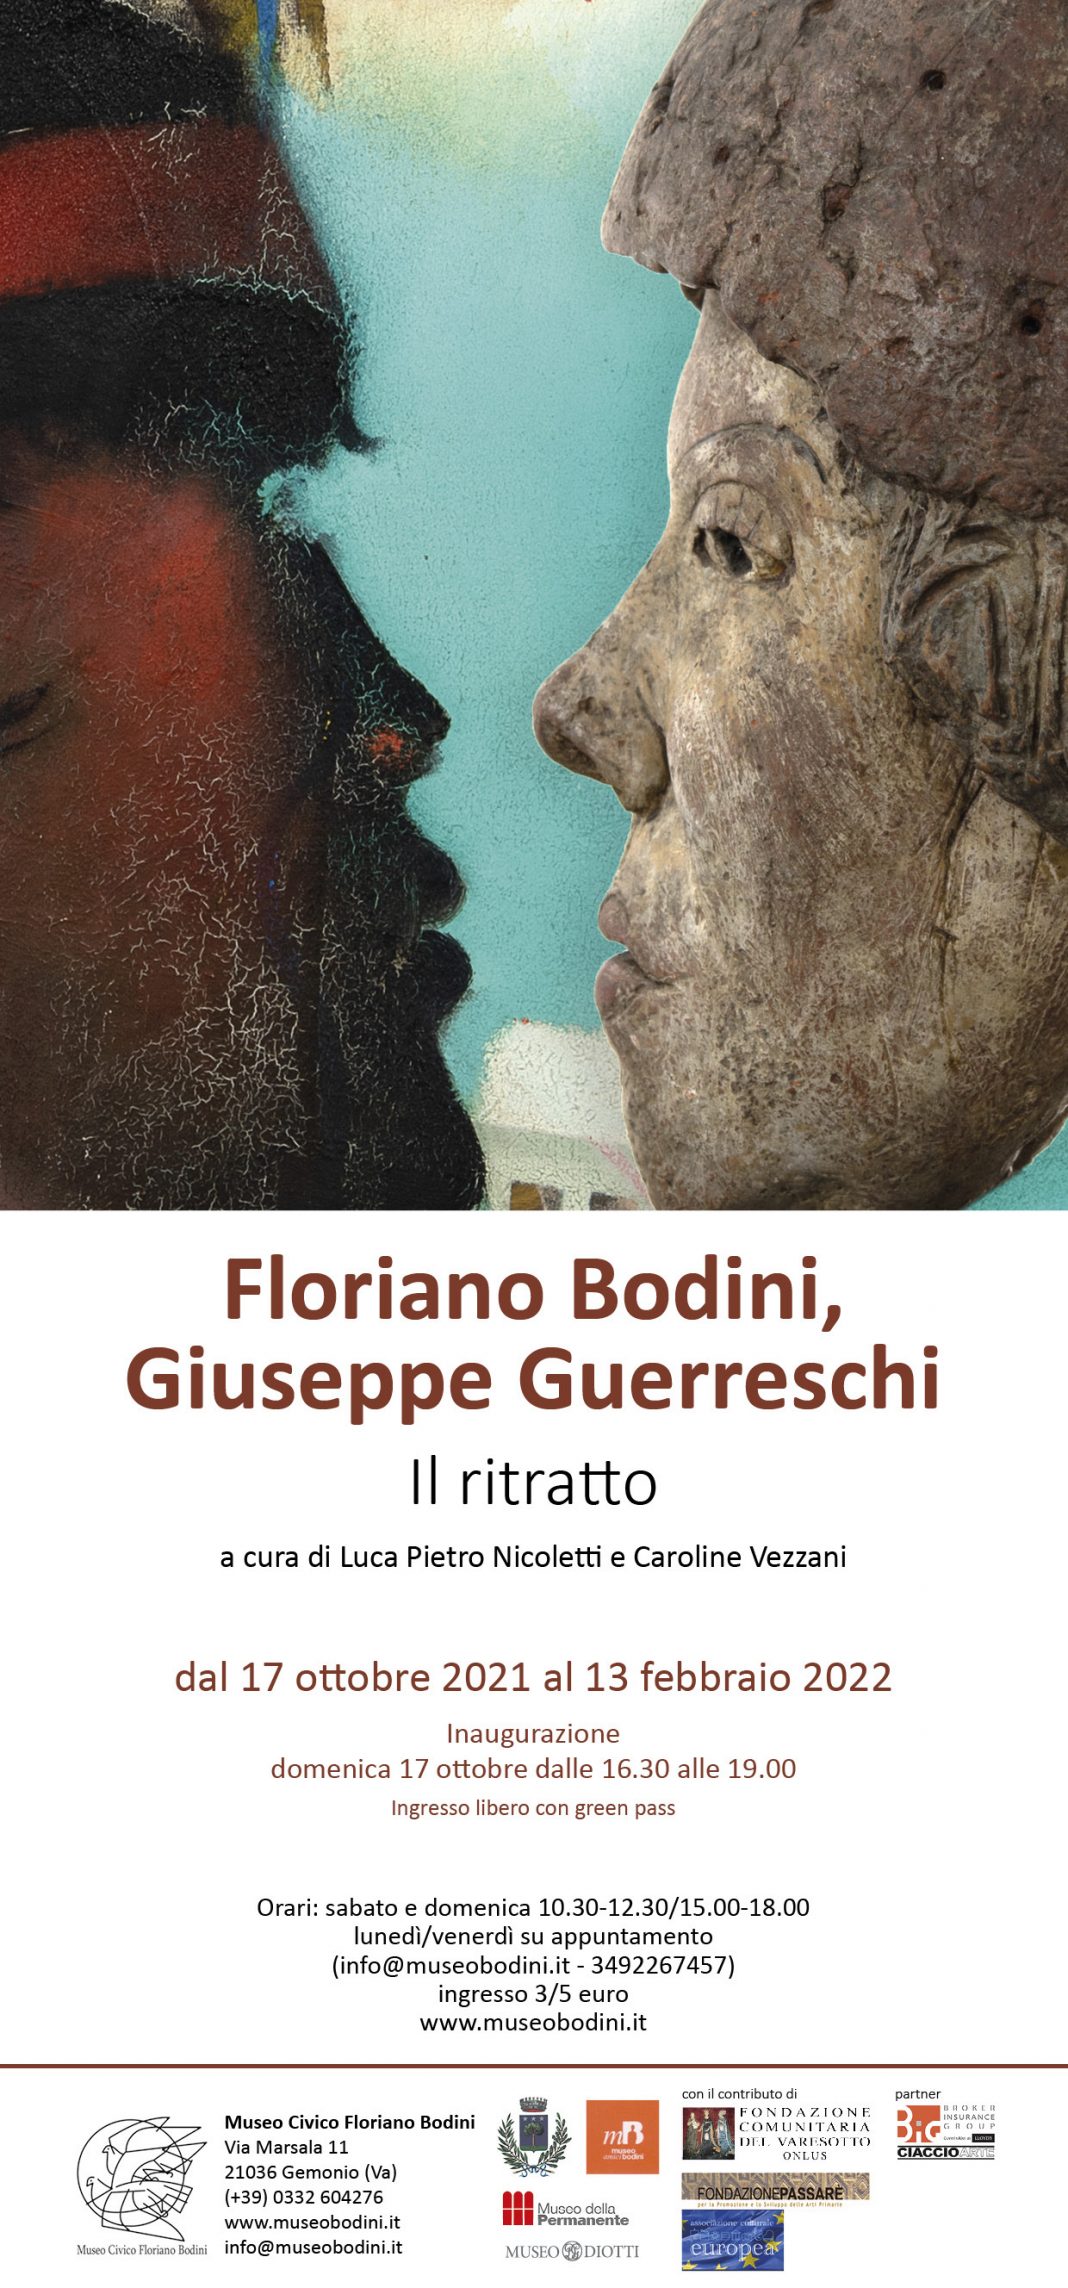 Floriano Bodini / Giuseppe Guerreschi – Il ritrattohttps://www.exibart.com/repository/media/formidable/11/img/ab3/locandina-Guerreschi-Bodini-1068x2288.jpg